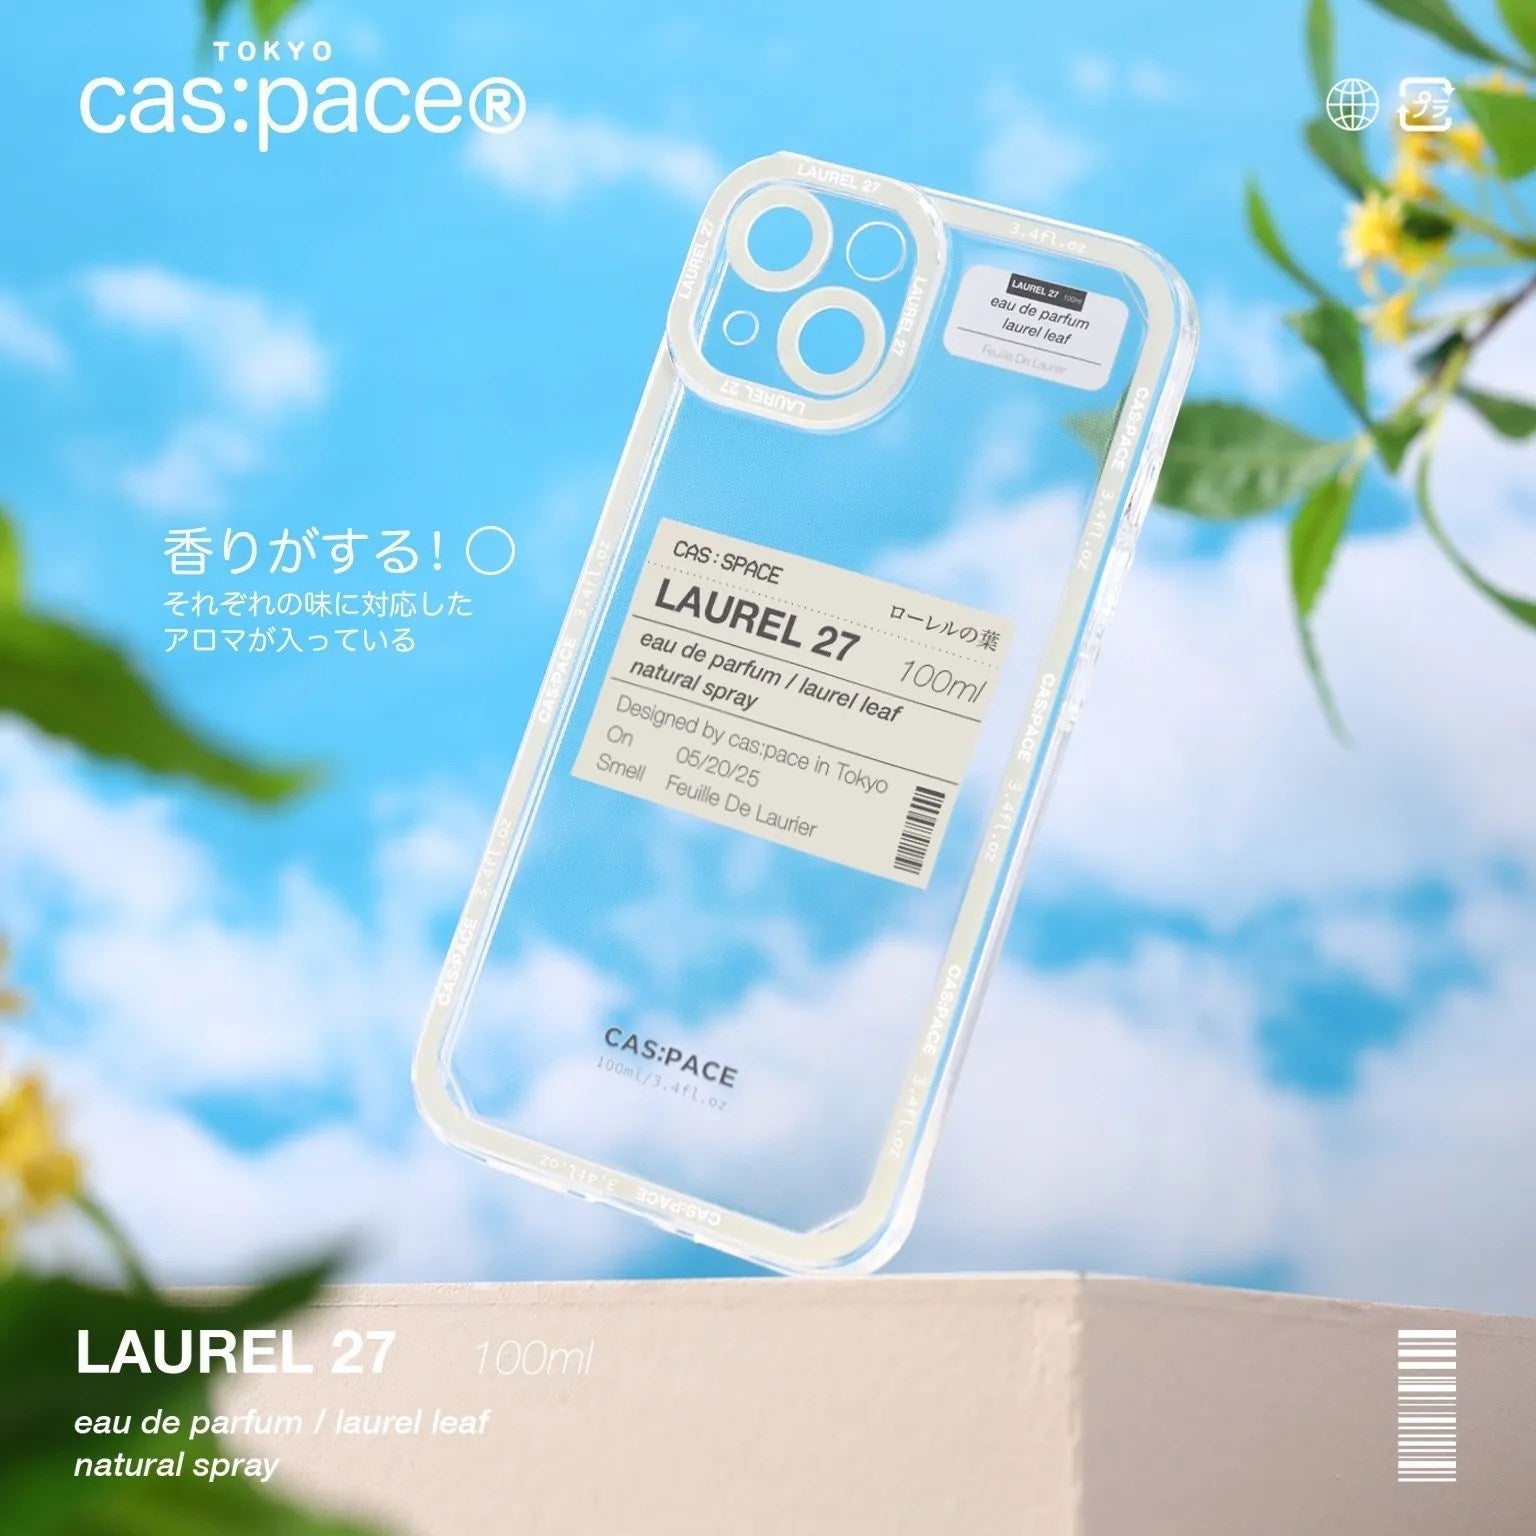 cas:pace 22S/S 「Laurel 27」携帯ケース - cas:pace 殼空間